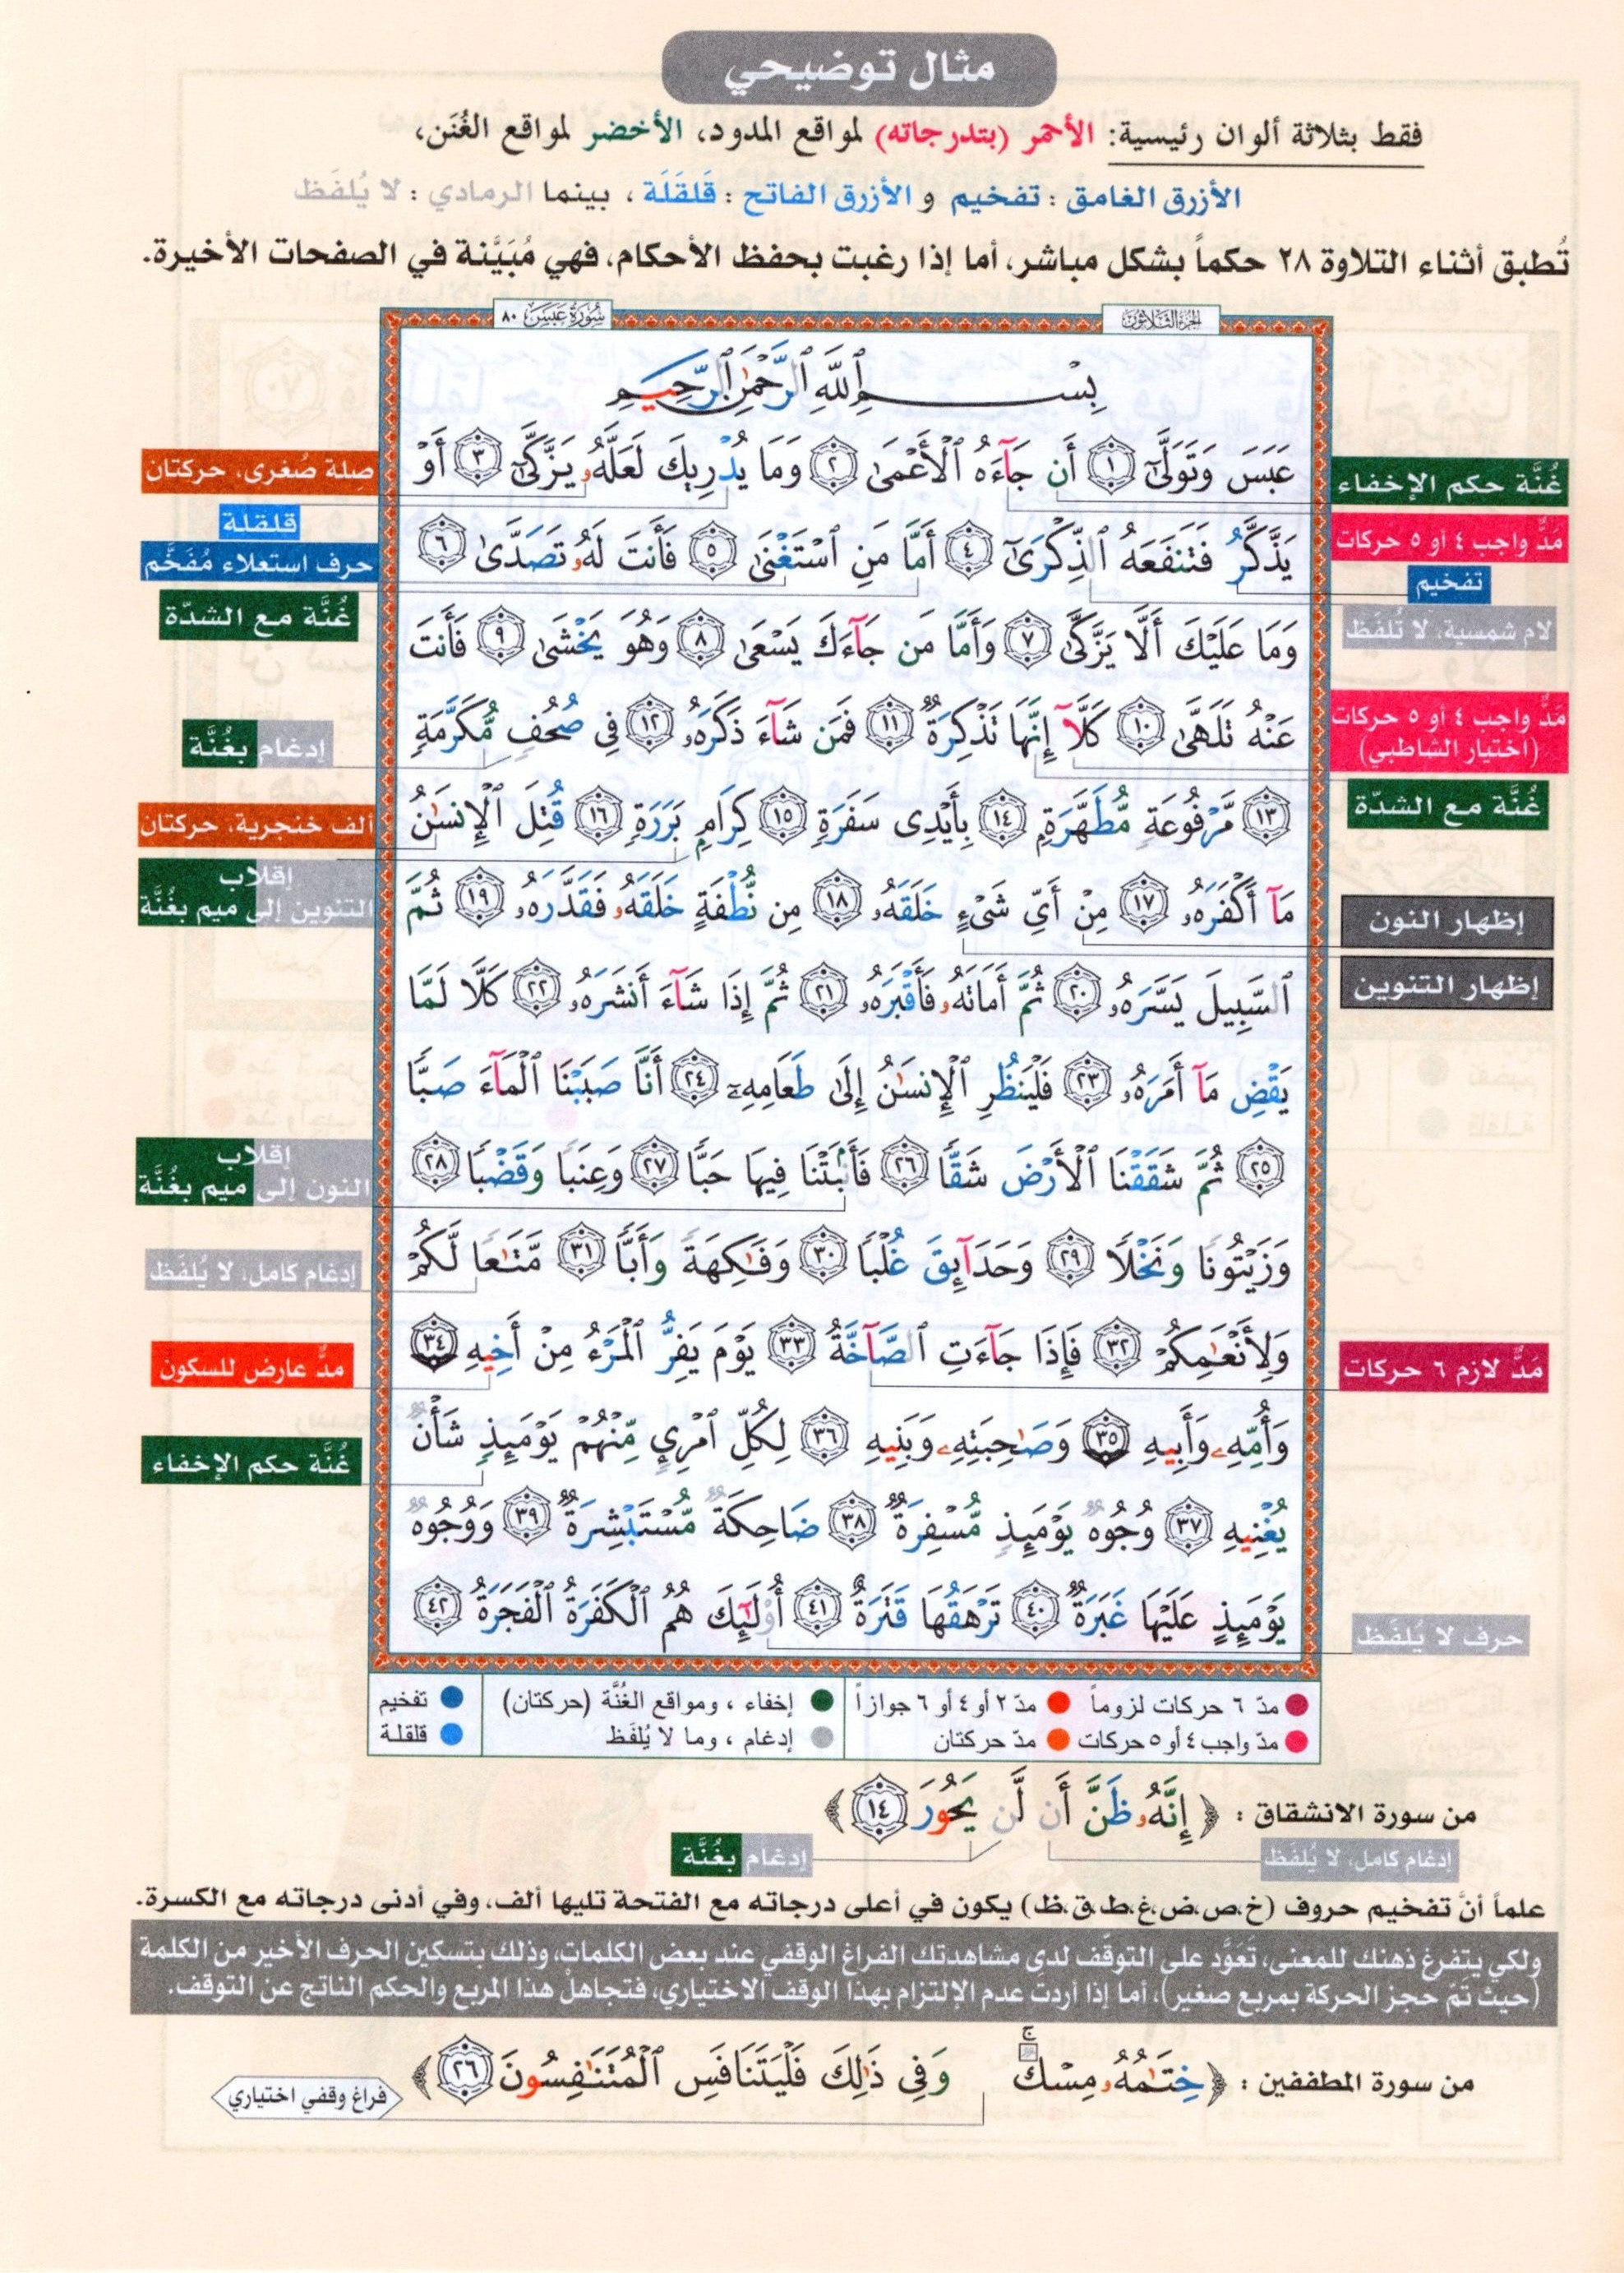 Tajweed Quran Juz' Tabarak Part 29 (7" x 9")